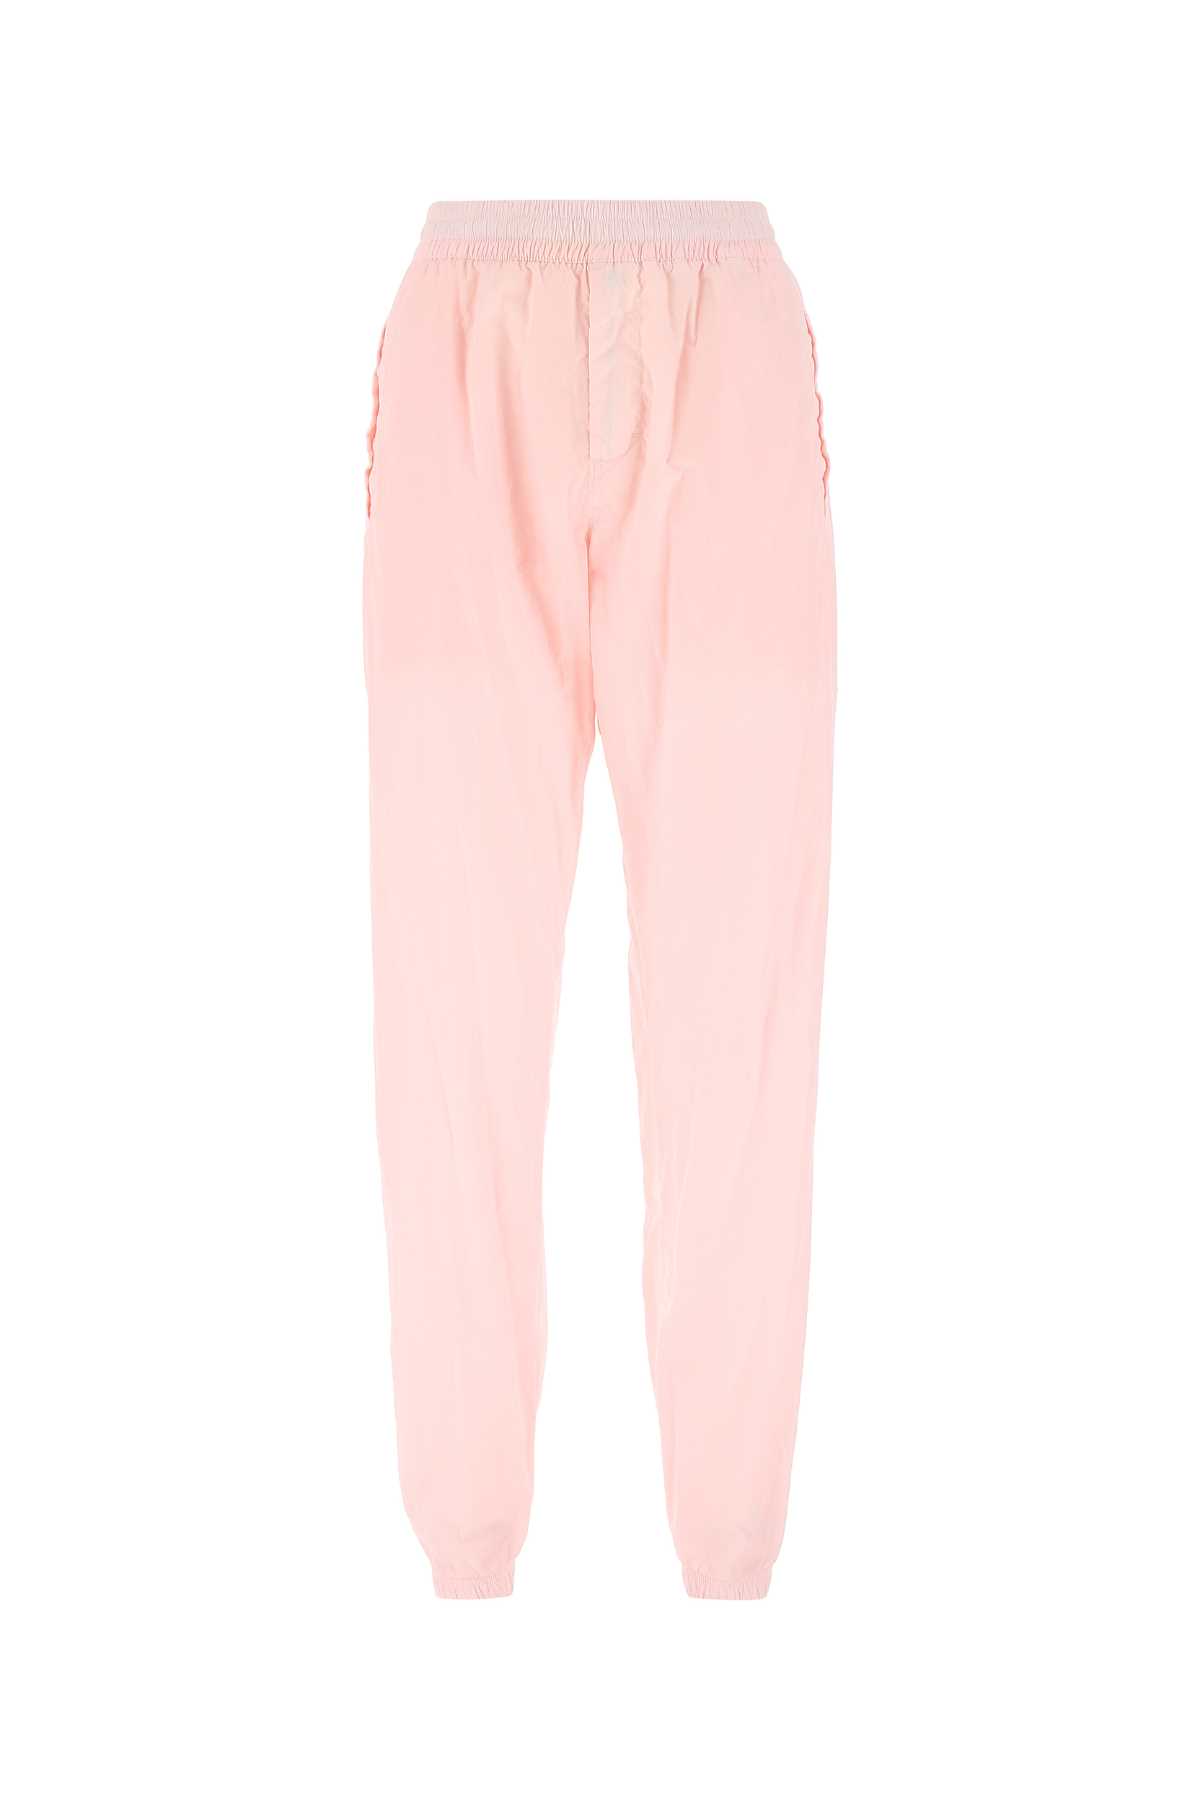 Pantalons Pour Femme - Givenchy - En Synthetic Fibers Multicolor - Taille:  -